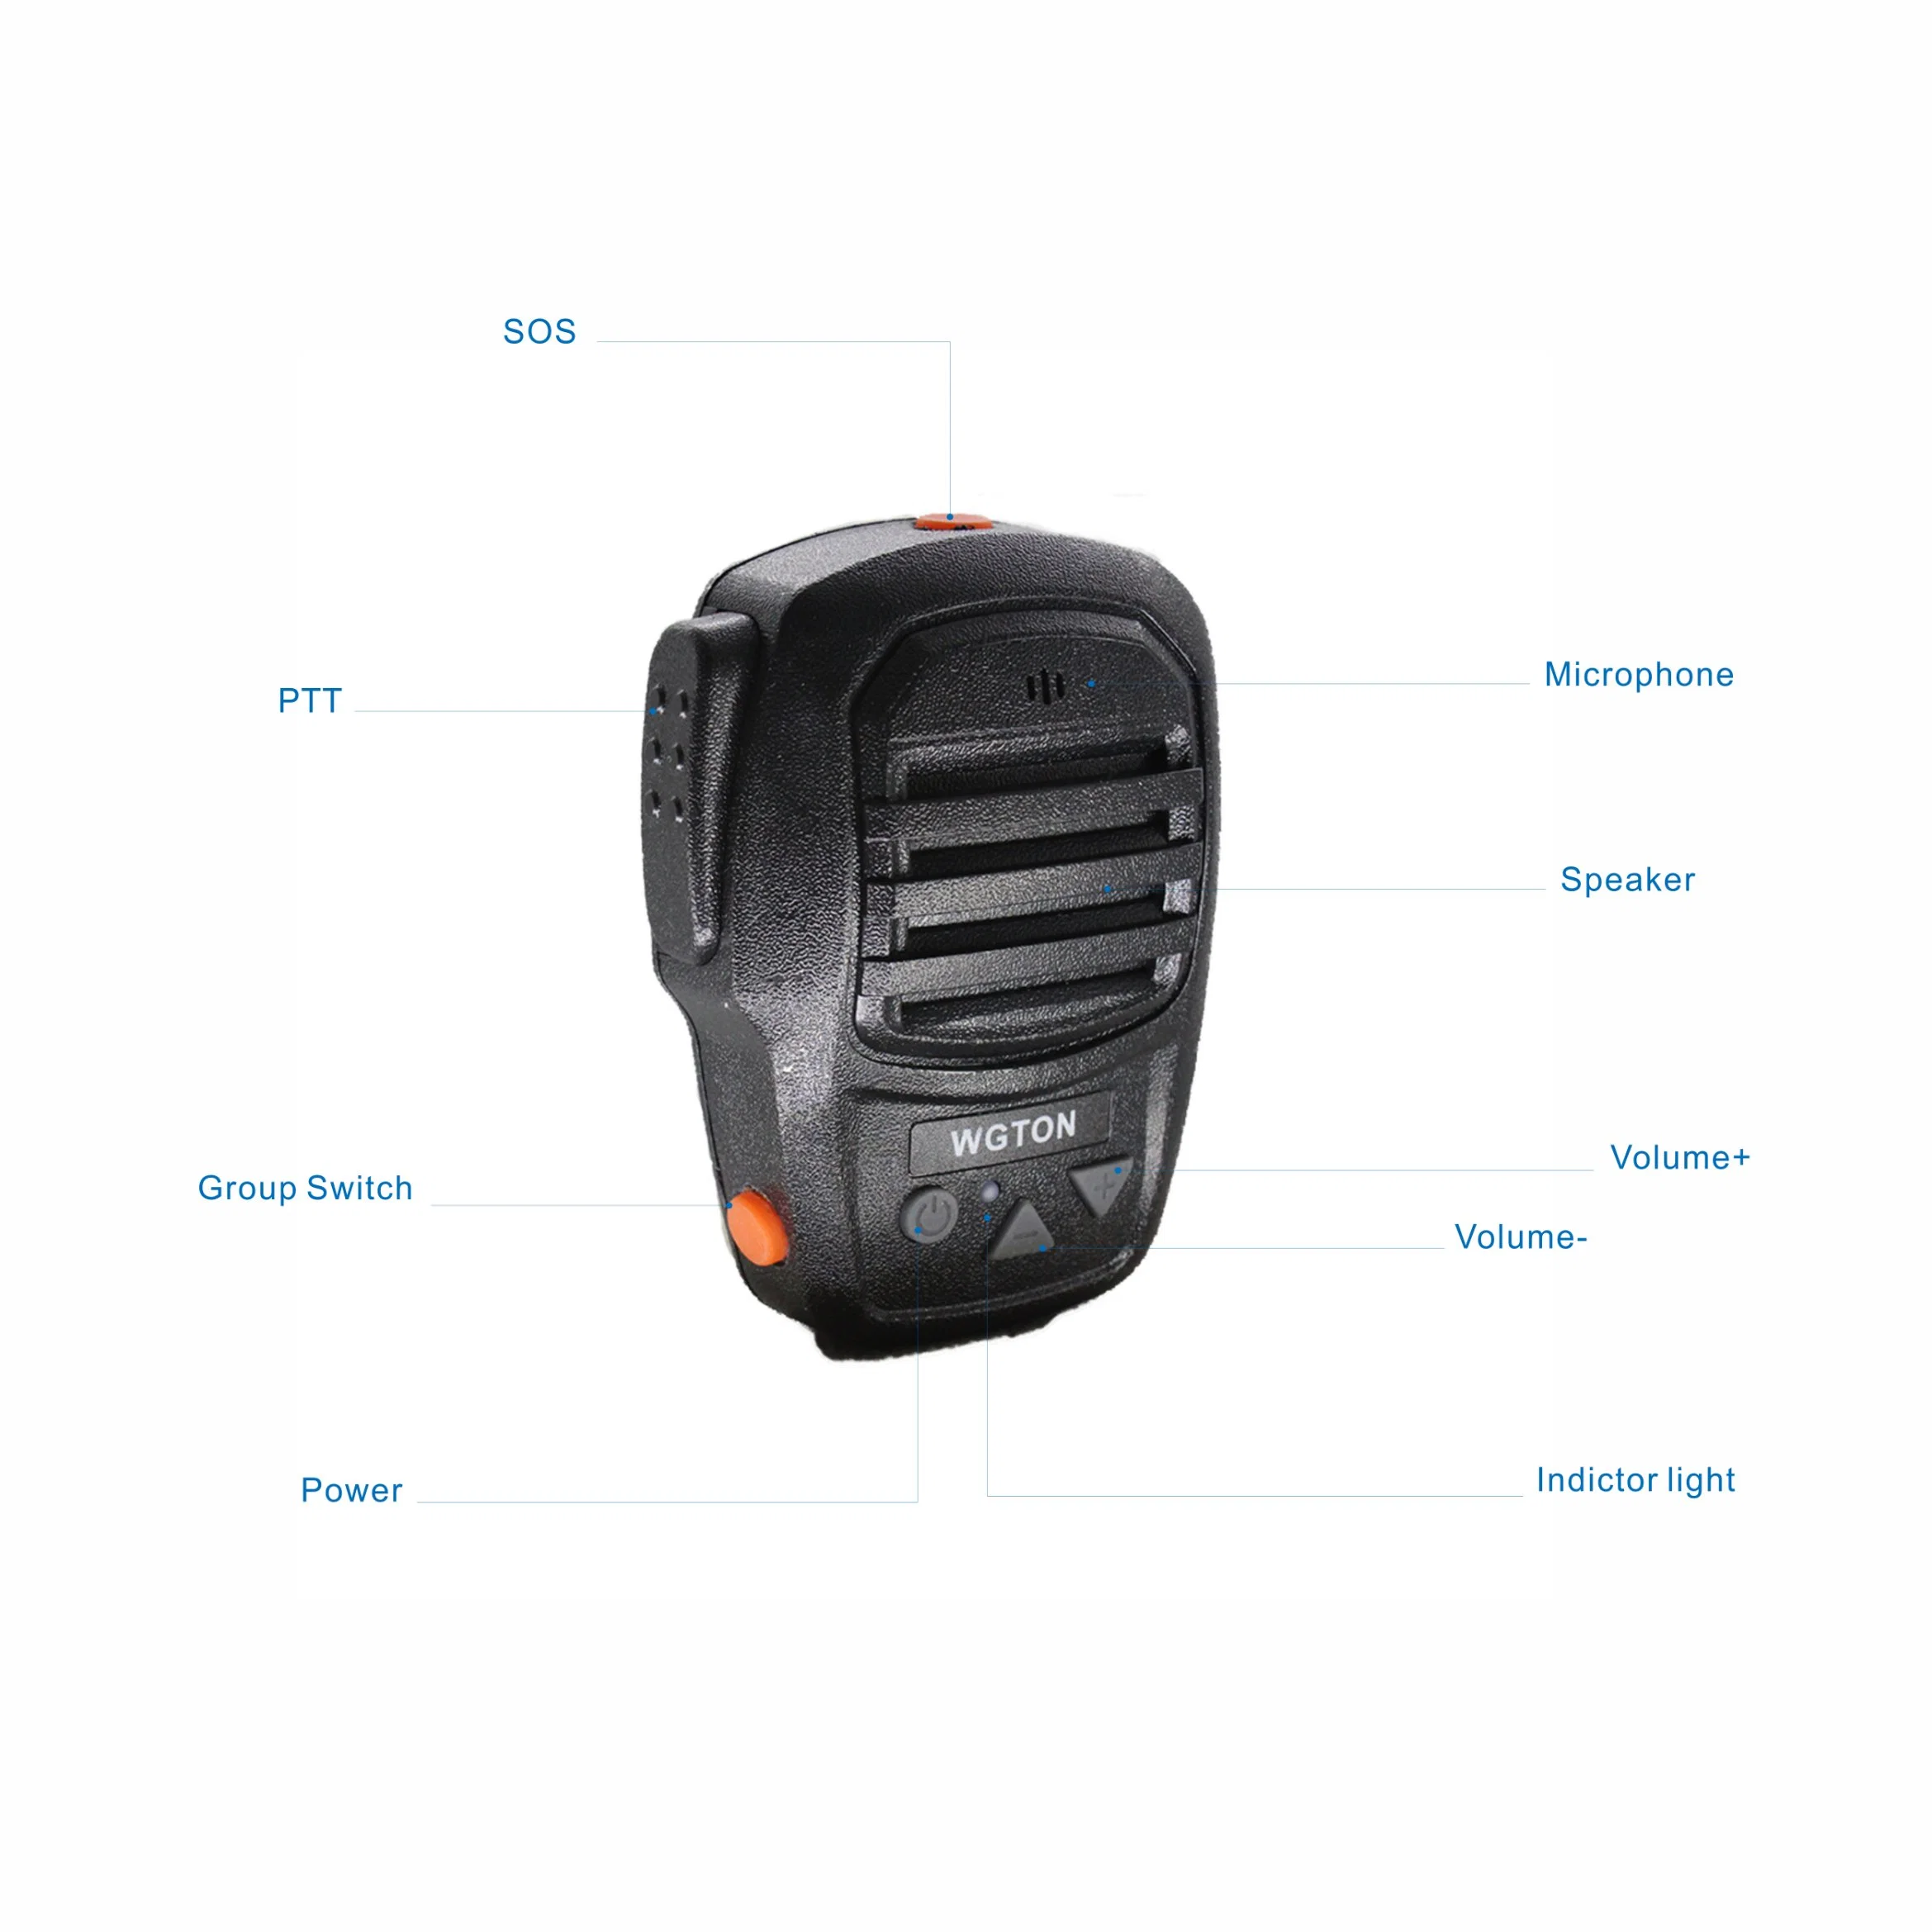 Wgton bt150 Bluetooth громкоговоритель микрофон беспроводной гарнитуры наушник взять на себя динамик микрофон для 3G/4G Smart Poc Raido